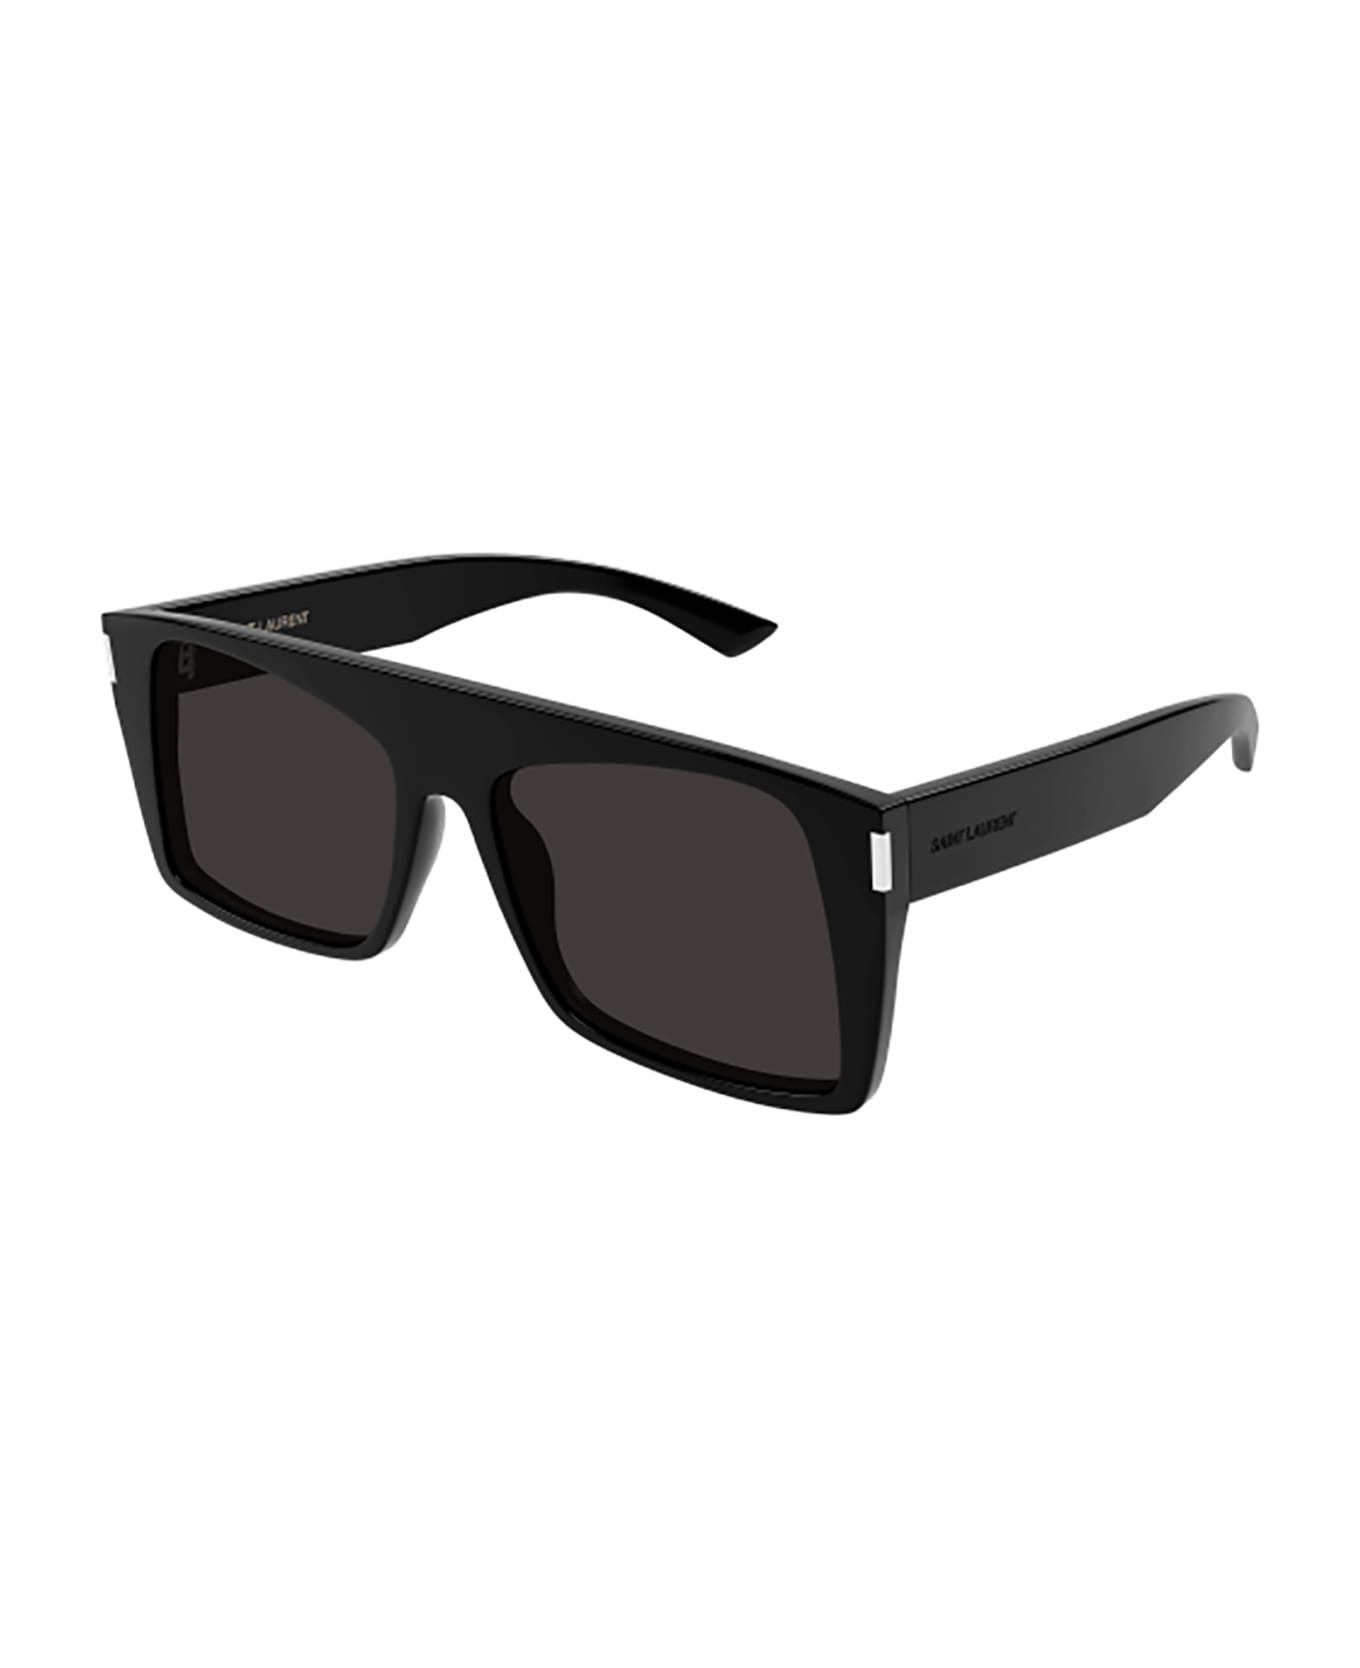 Saint Laurent Eyewear SL 651 VITTI Sunglasses - Black Black Black